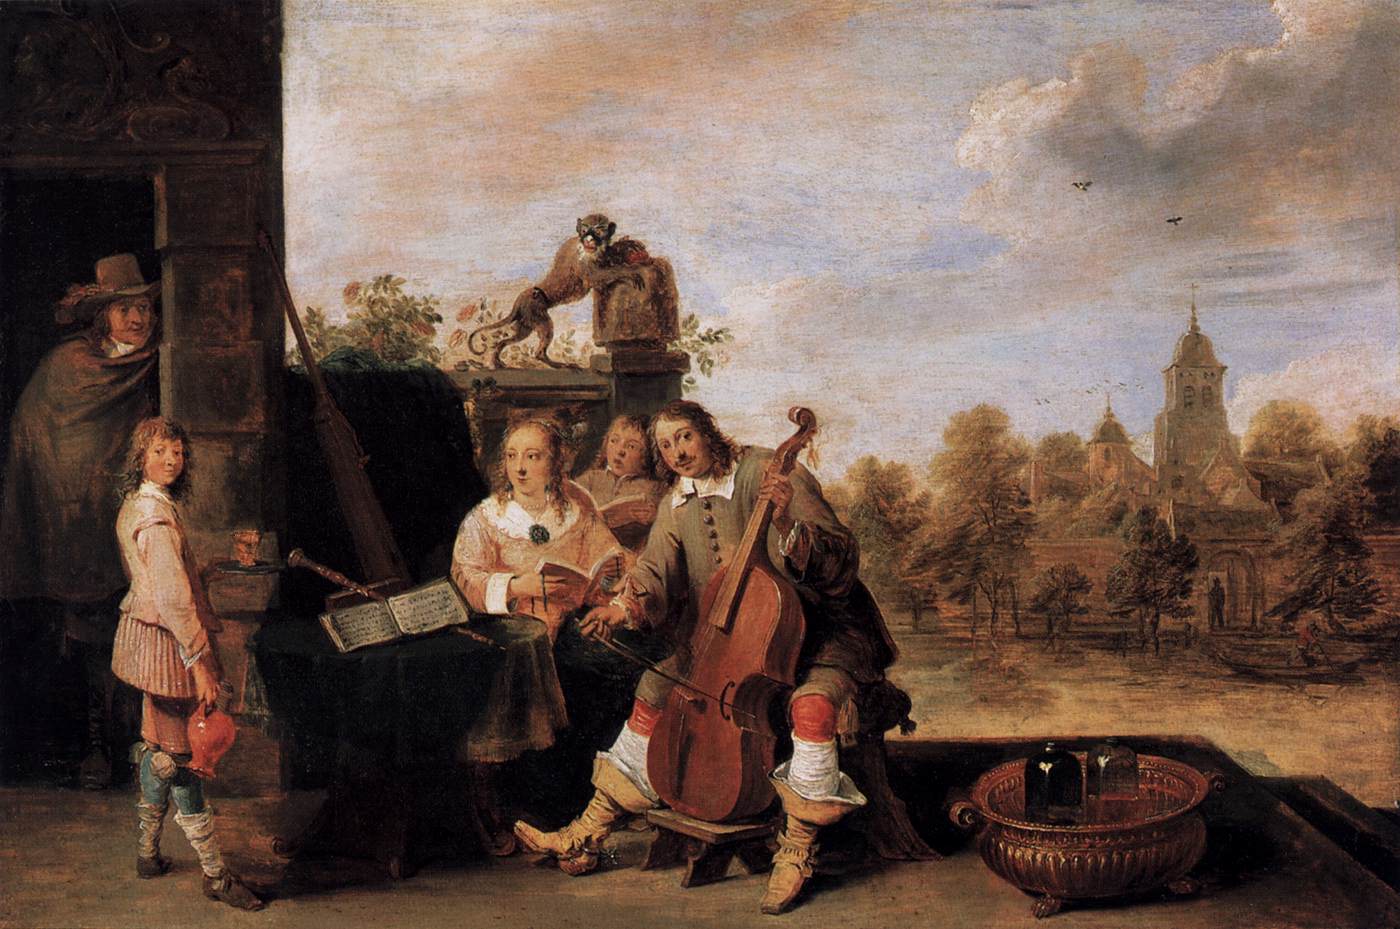 Le peintre et sa famille